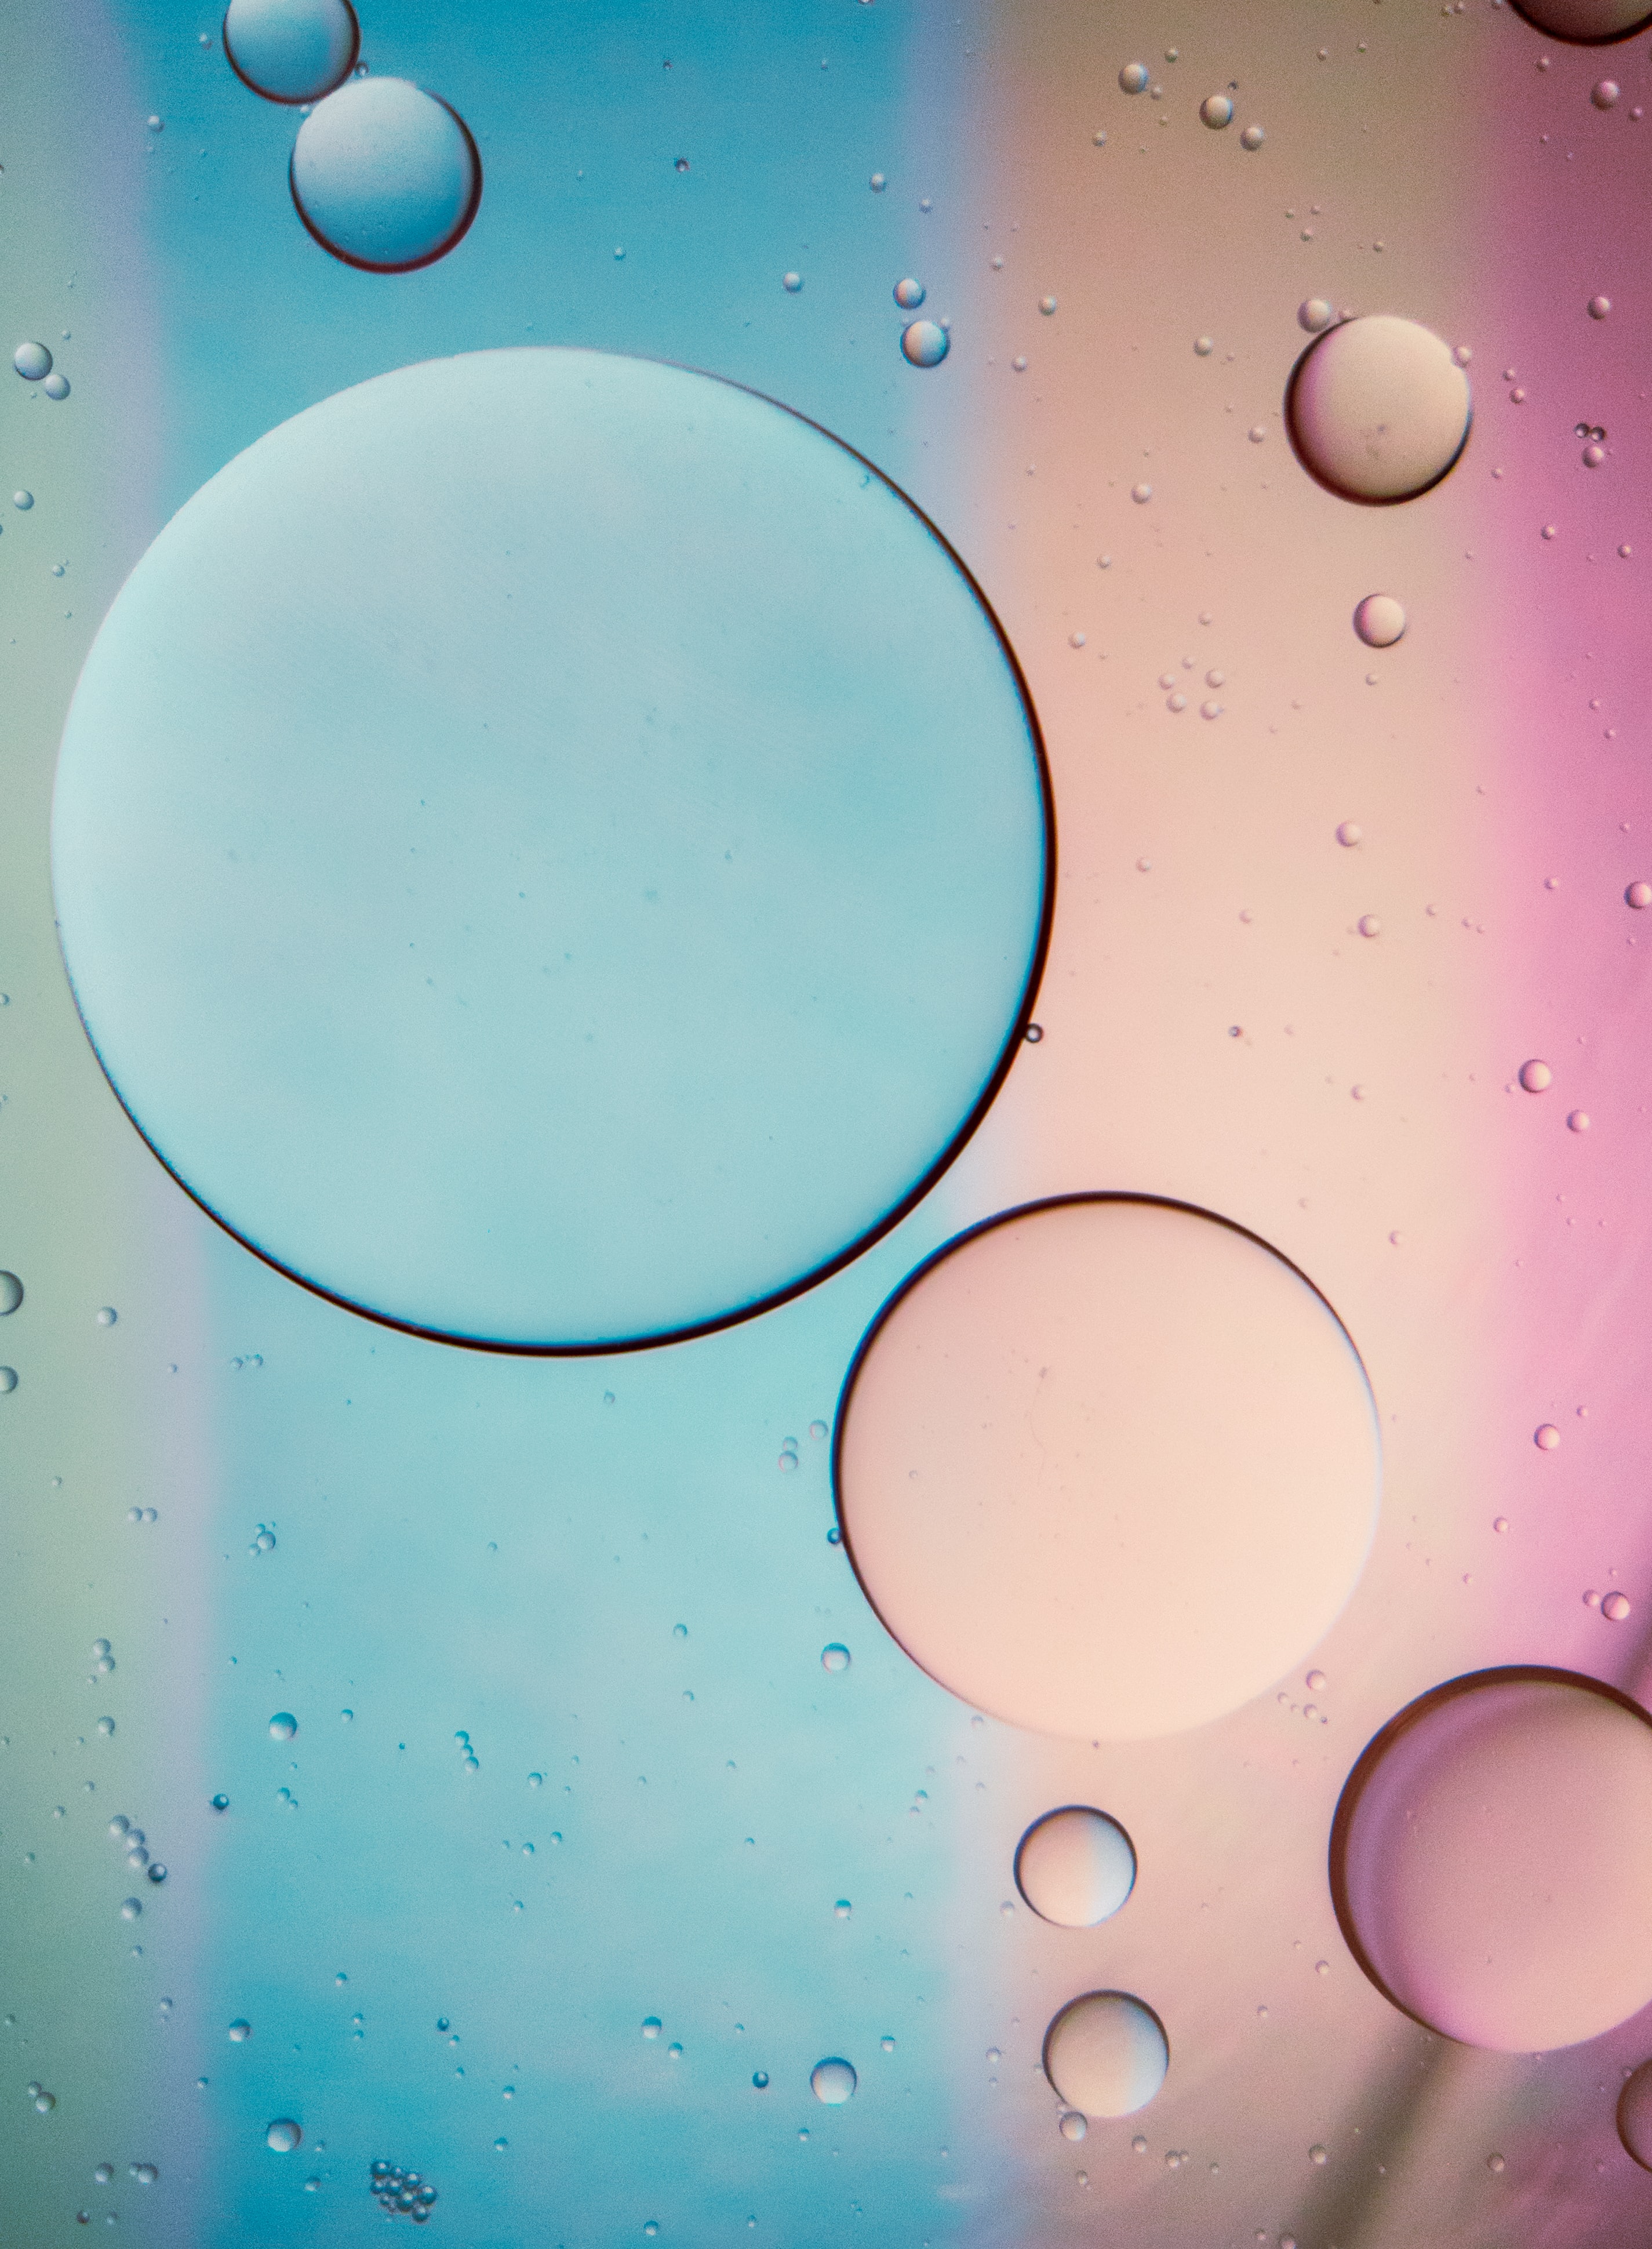 bubbles, blue, pink, macro, liquid, butter, oil images